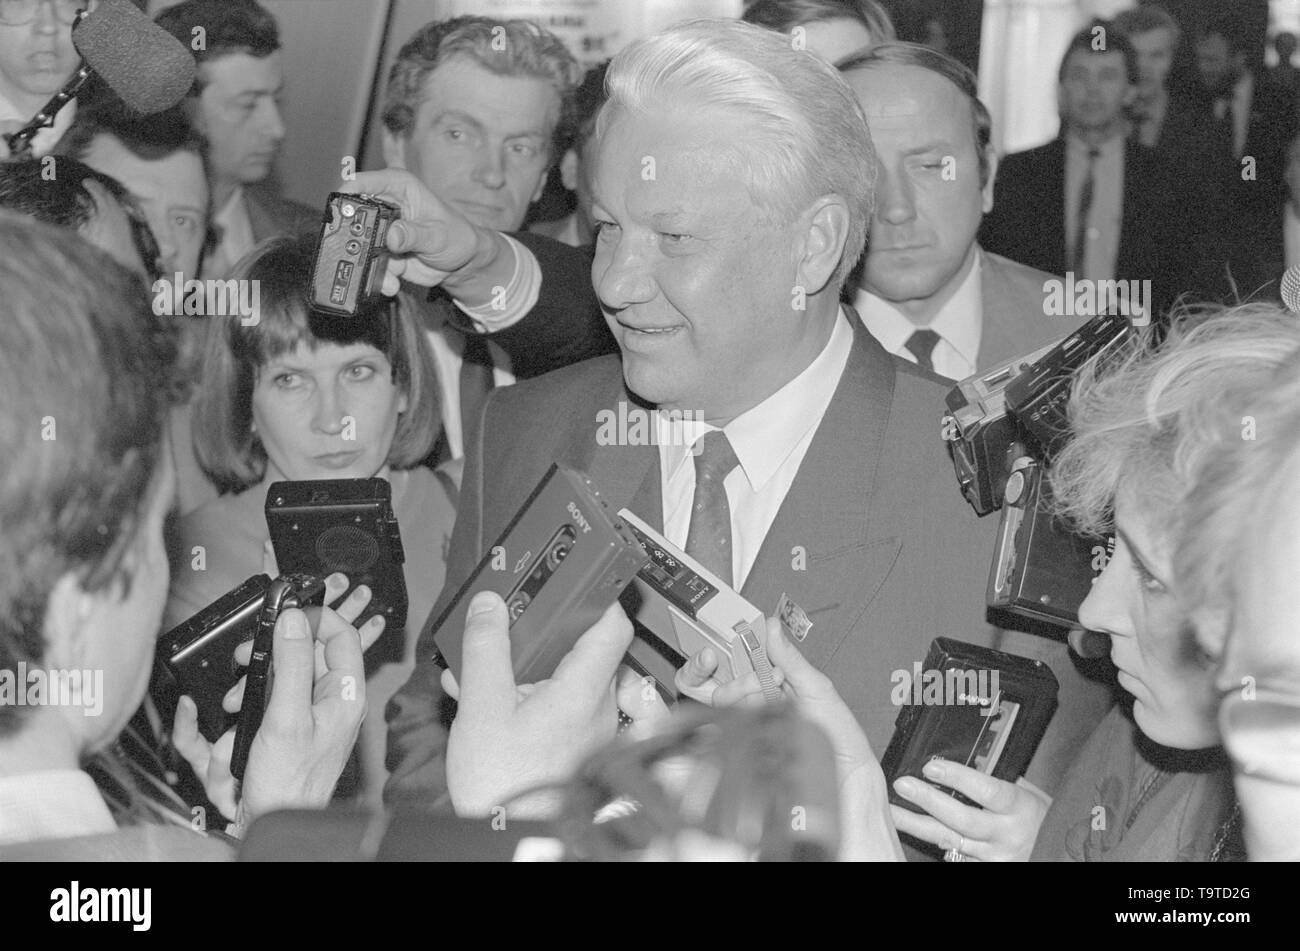 Moscou, Russie - le 28 mars 1991 : Le Président du Présidium du Soviet suprême de la RSFSR Boris Nikolaïevitch Eltsine parle aux correspondants en 3D au congrès extraordinaire des députés du peuple de la RSFSR. Banque D'Images